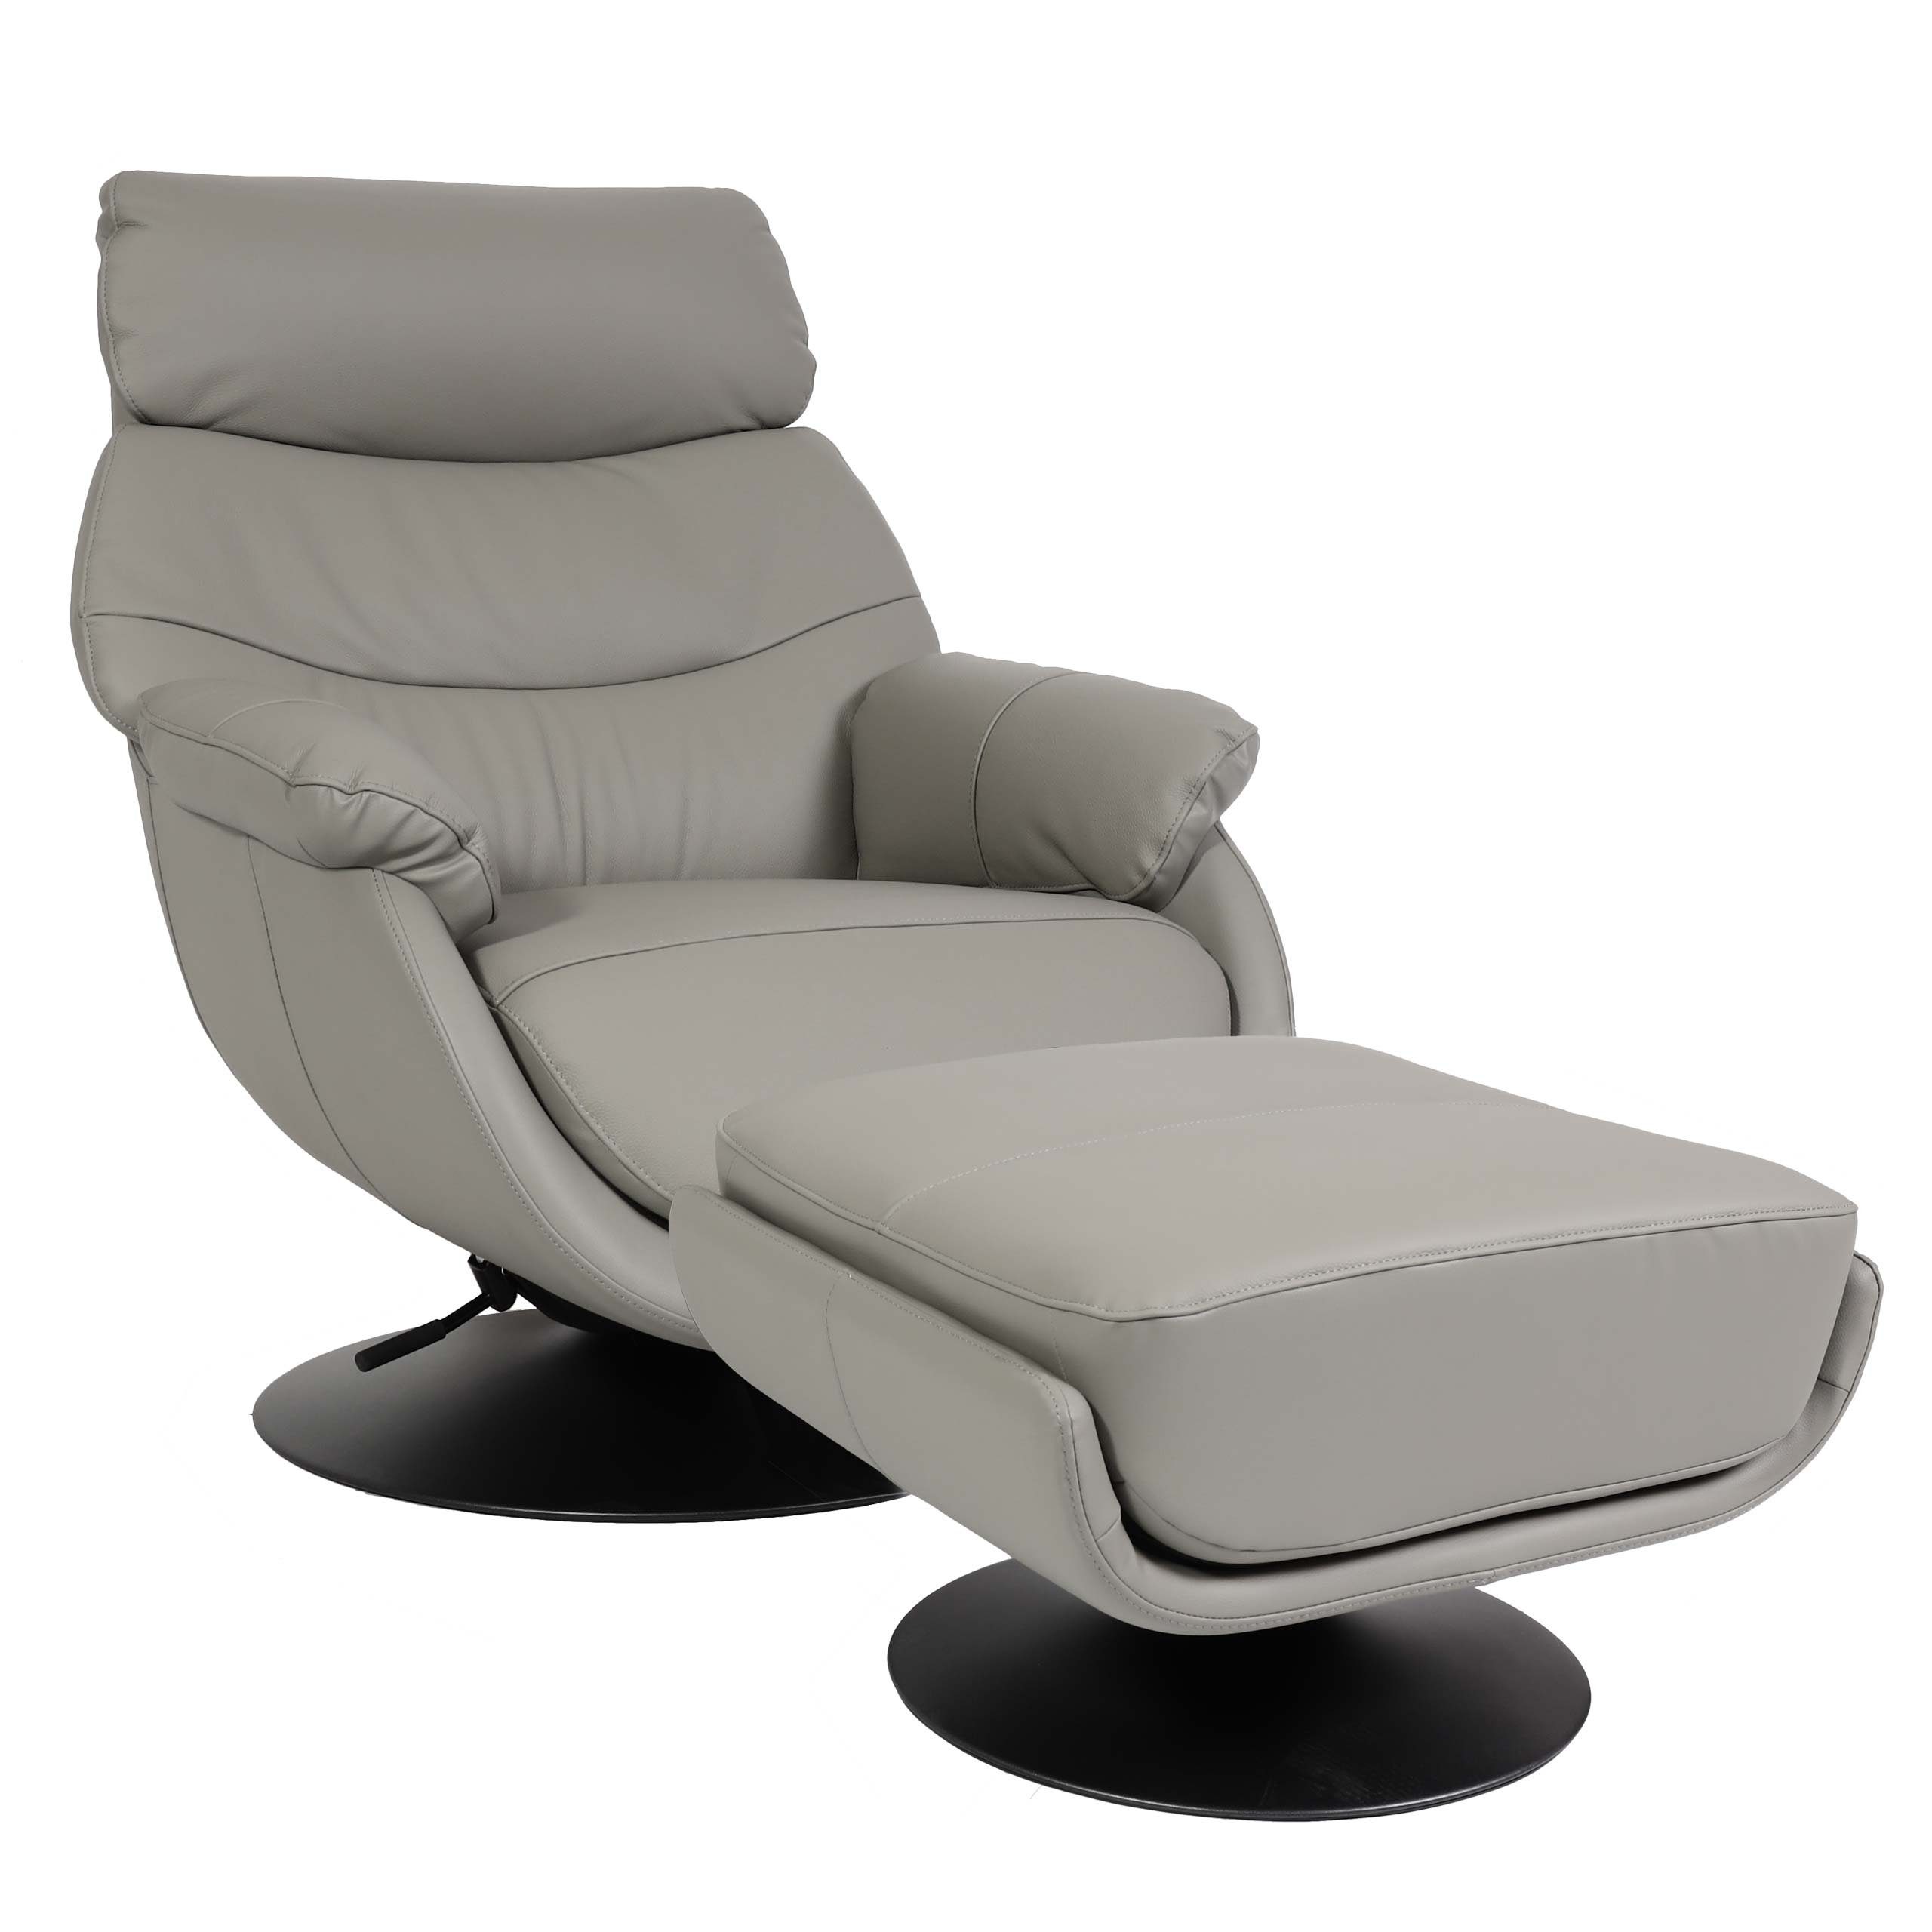 MCW Relaxsessel MCW-K99, Mit Feststellhebel, Breite Sitzfläche, Mit Armlehnen grau | grau